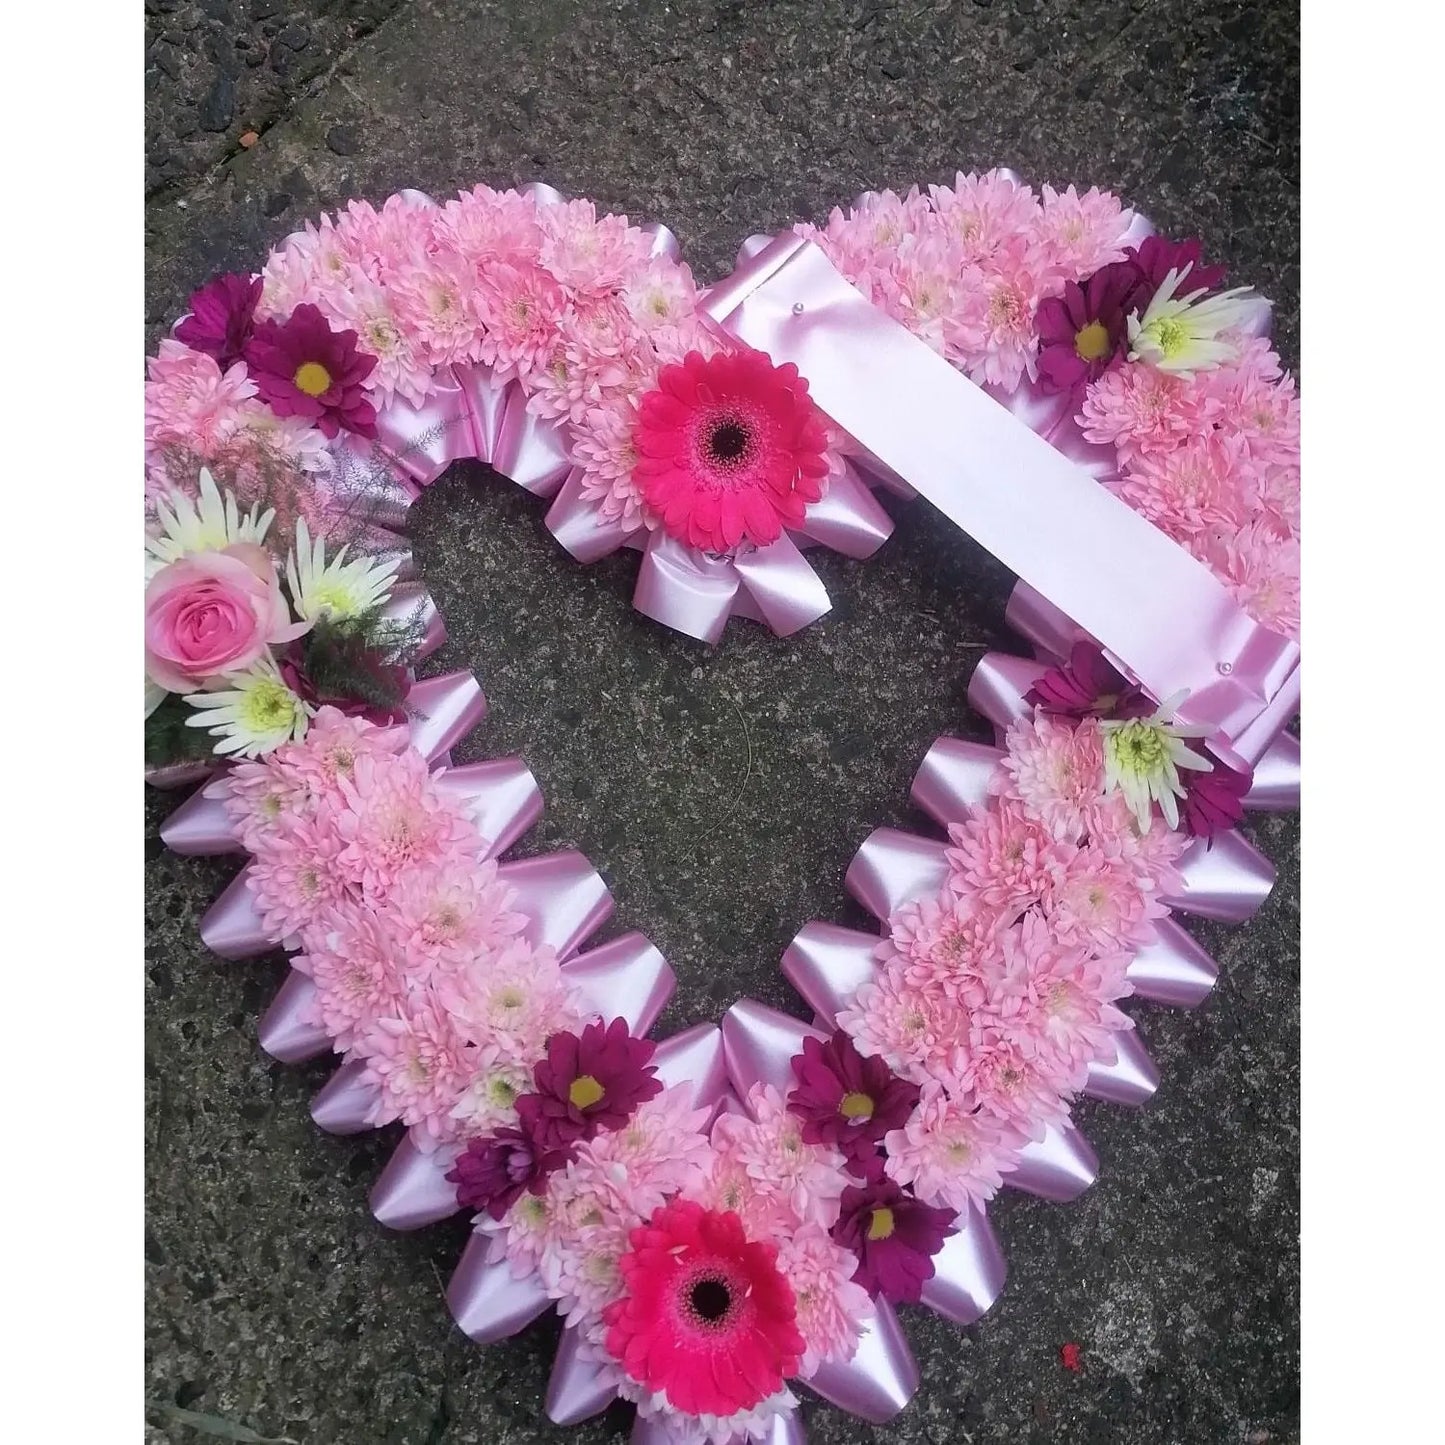 Funeral Flowers Lisburn - Heart Posies